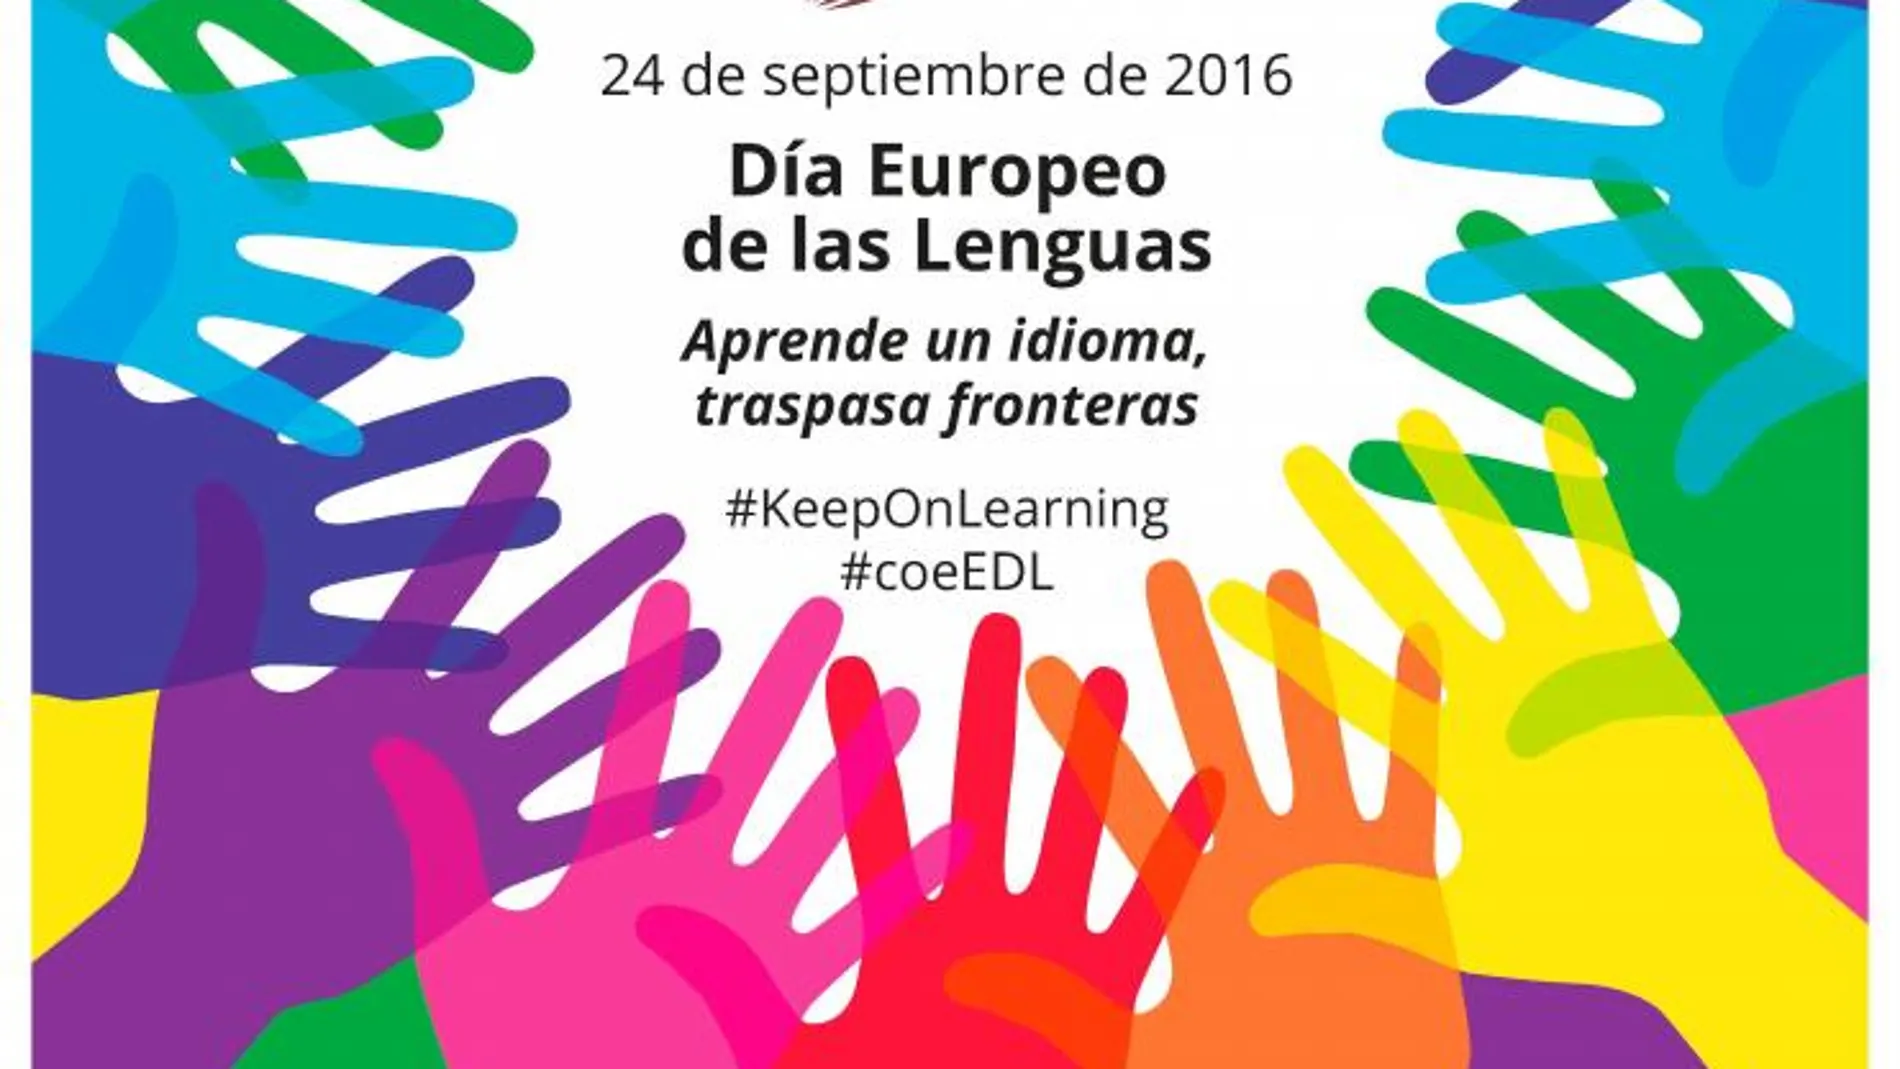 Pearson celebrará en Sevilla el Día Europeo de las Lenguas